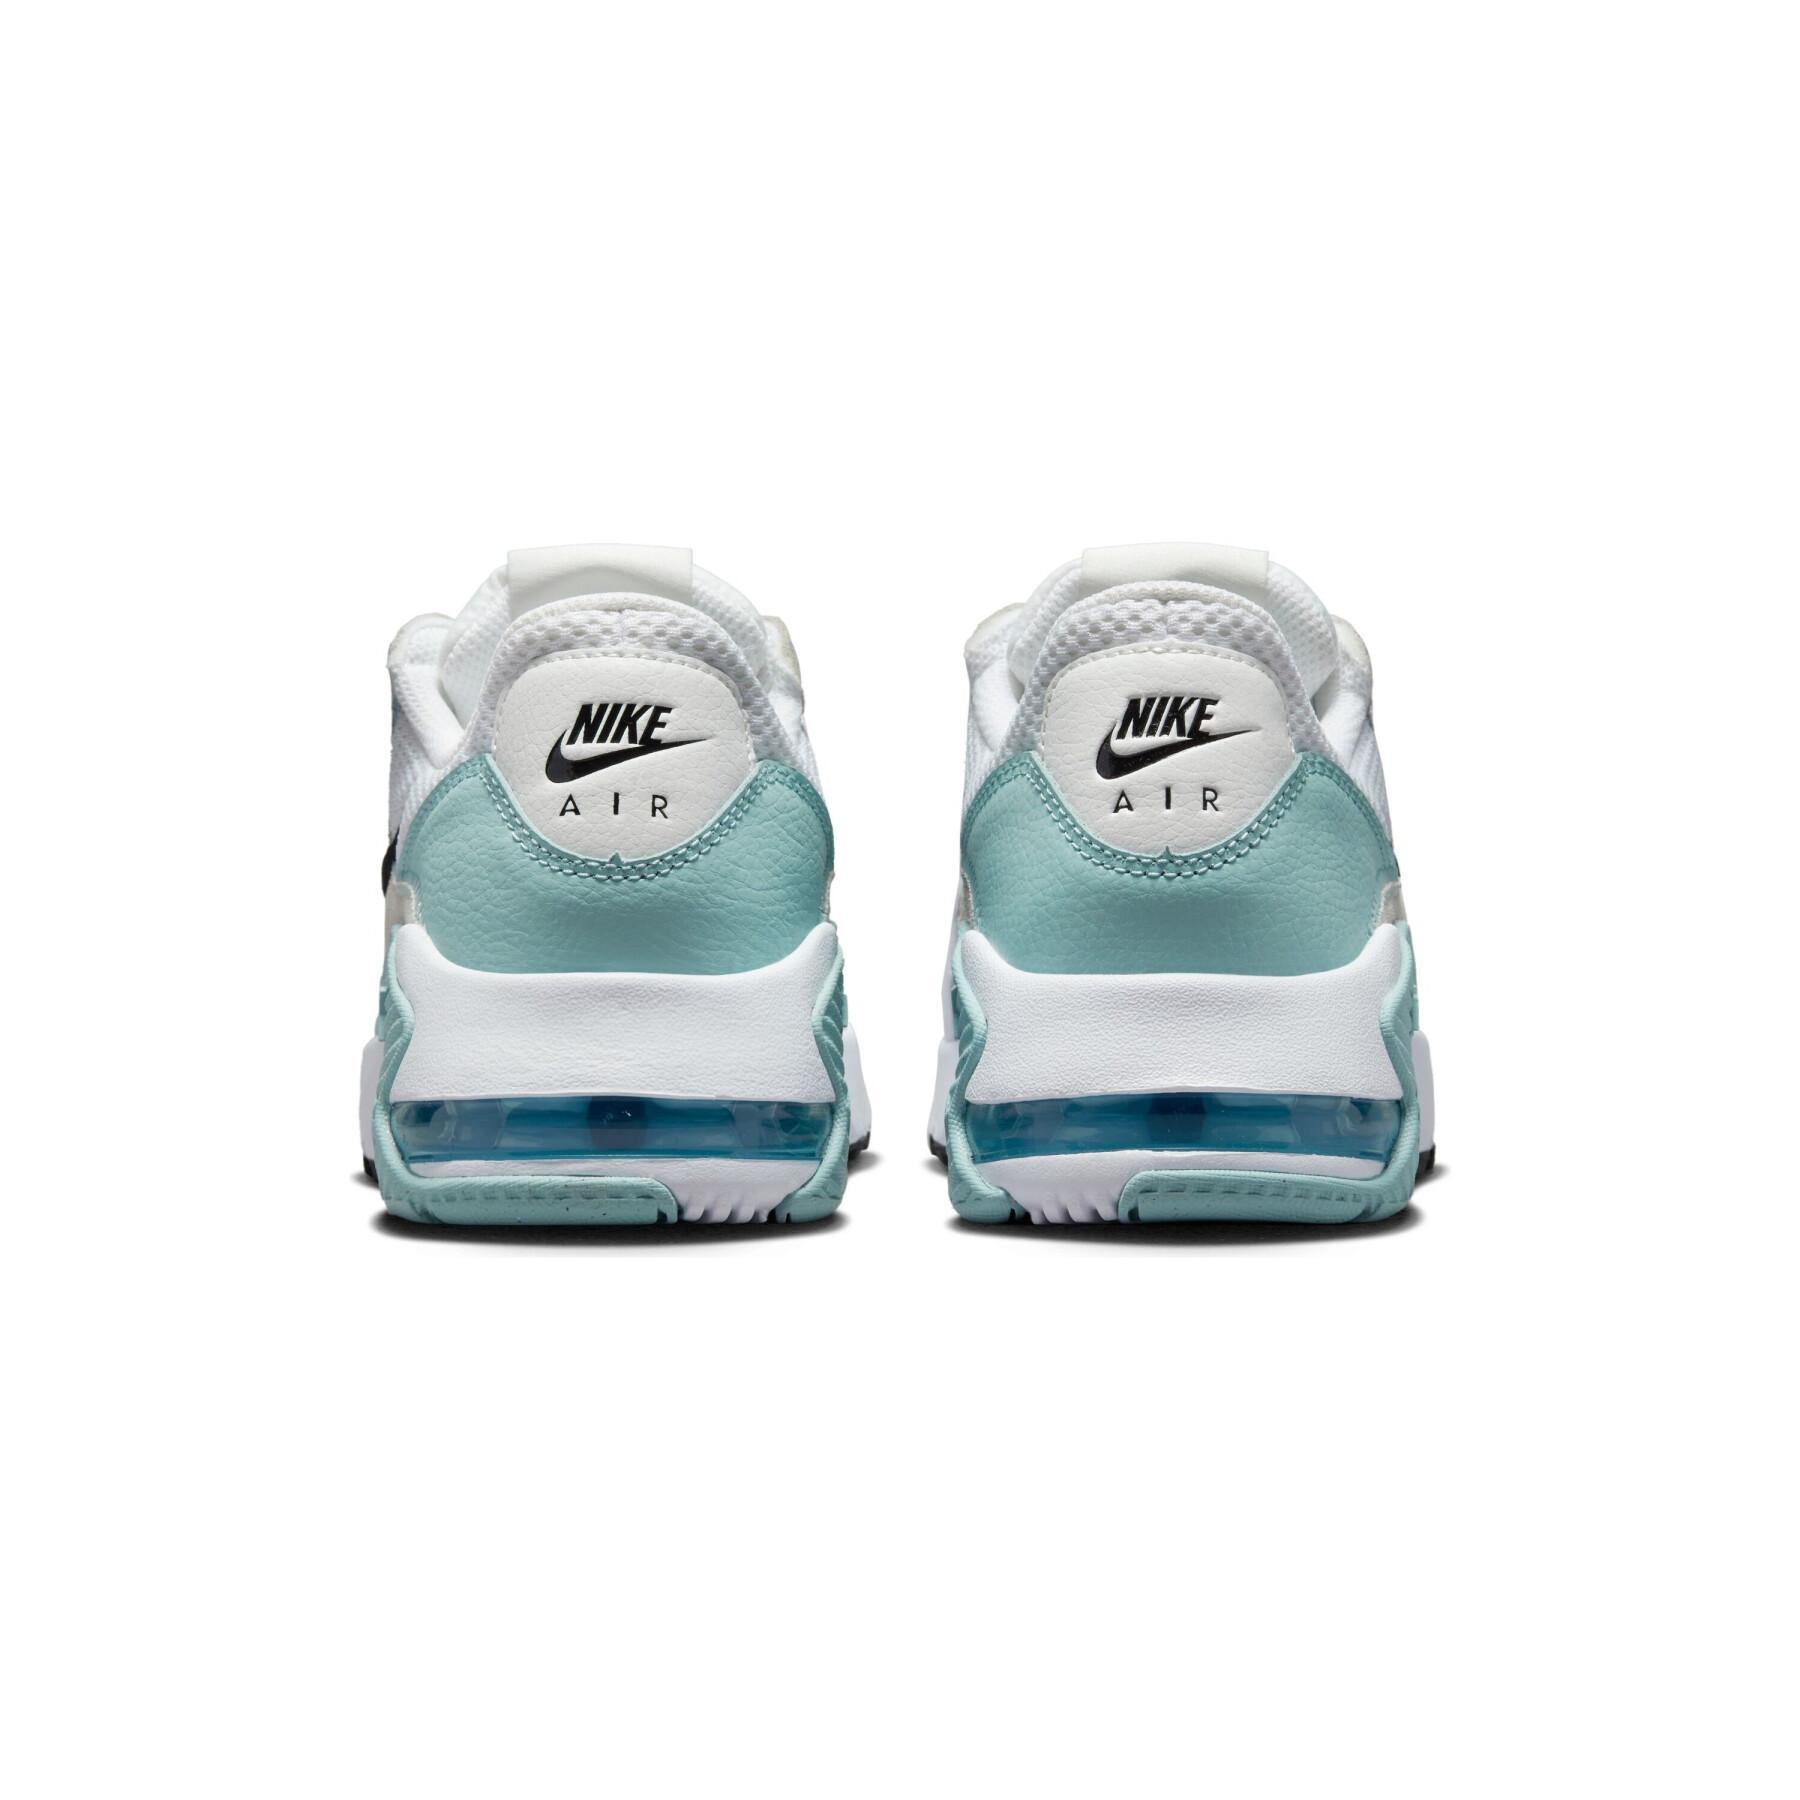 Women's sneakers Nike Air Max Excee